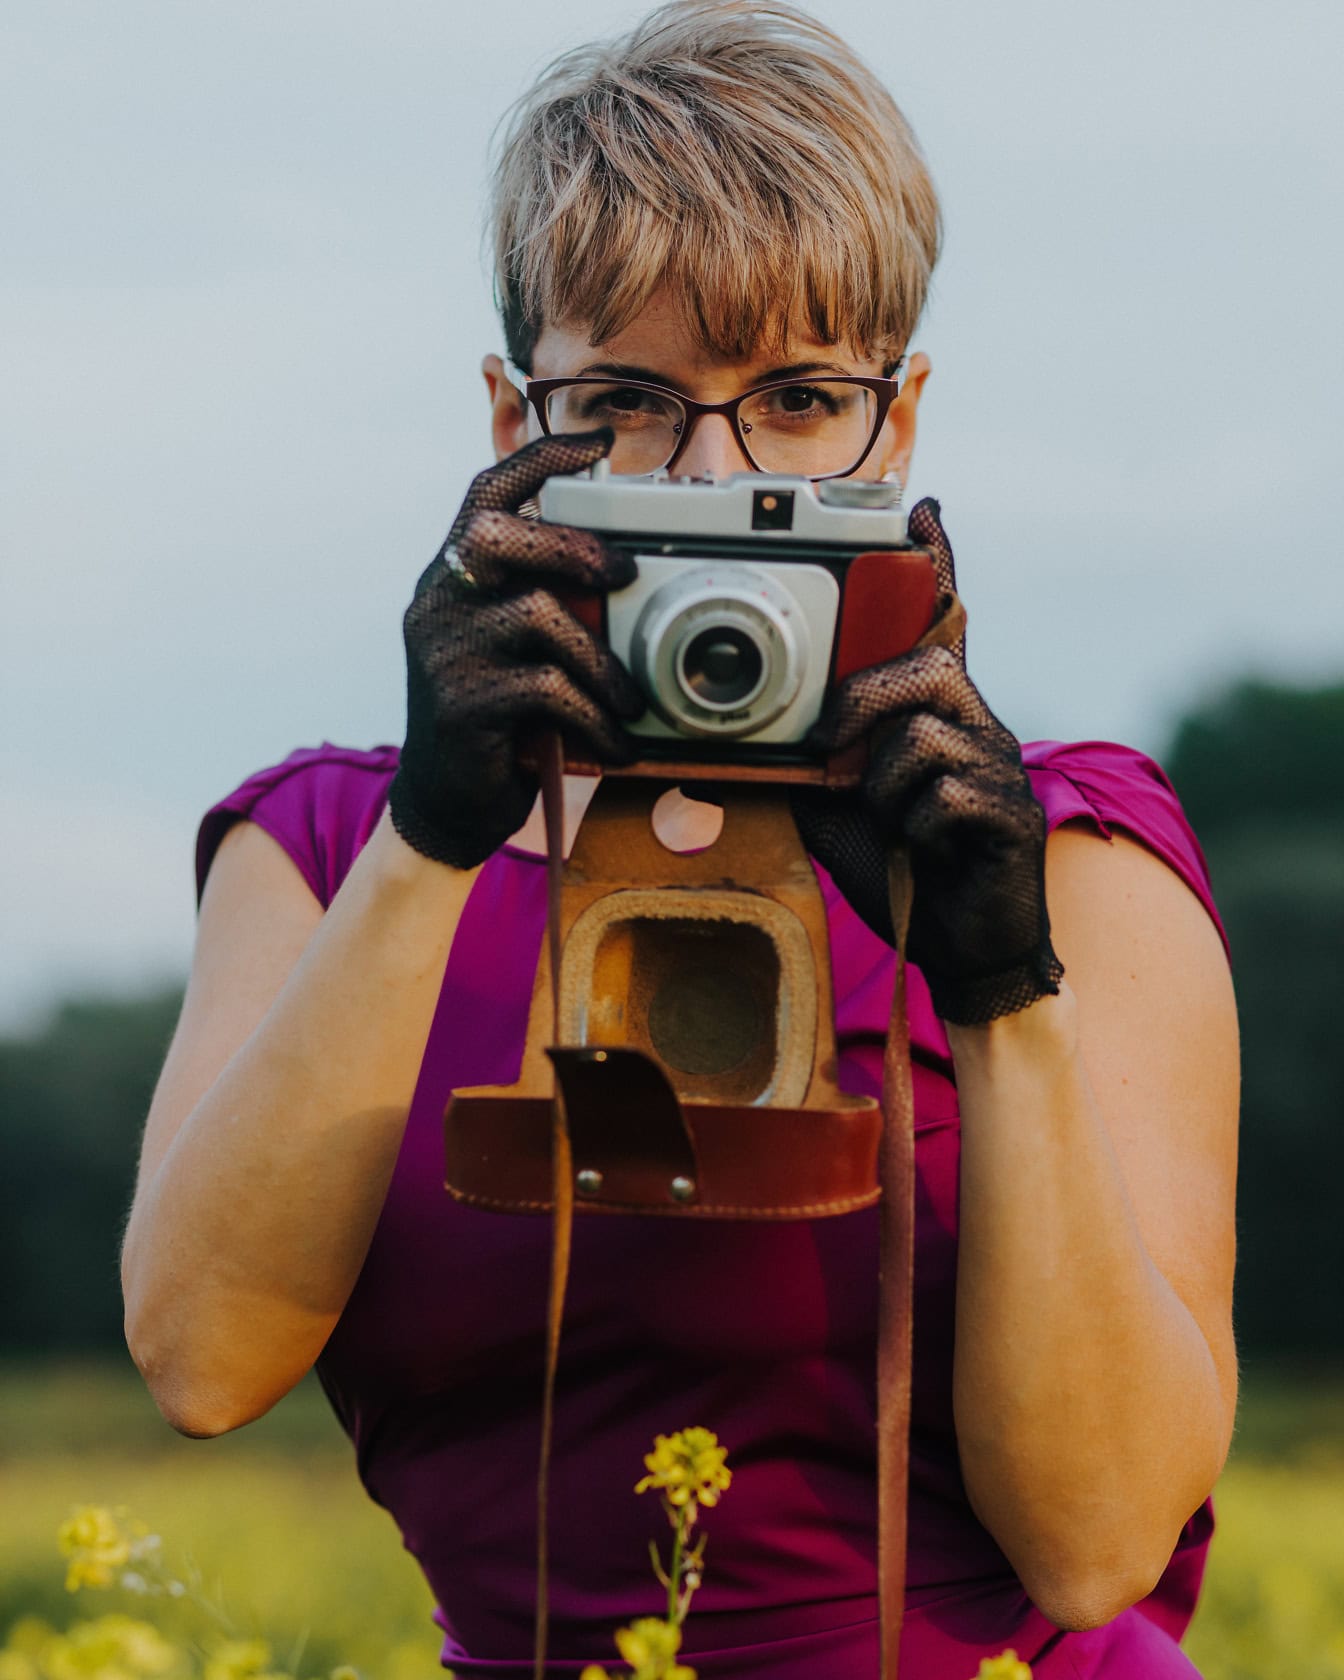 Λαμπερά ντυμένη γυναίκα φωτογράφος με μωβ φόρεμα κρατά μια παλιά αναλογική φωτογραφική μηχανή με δαντελένια γάντια και τραβάει μια φωτογραφία